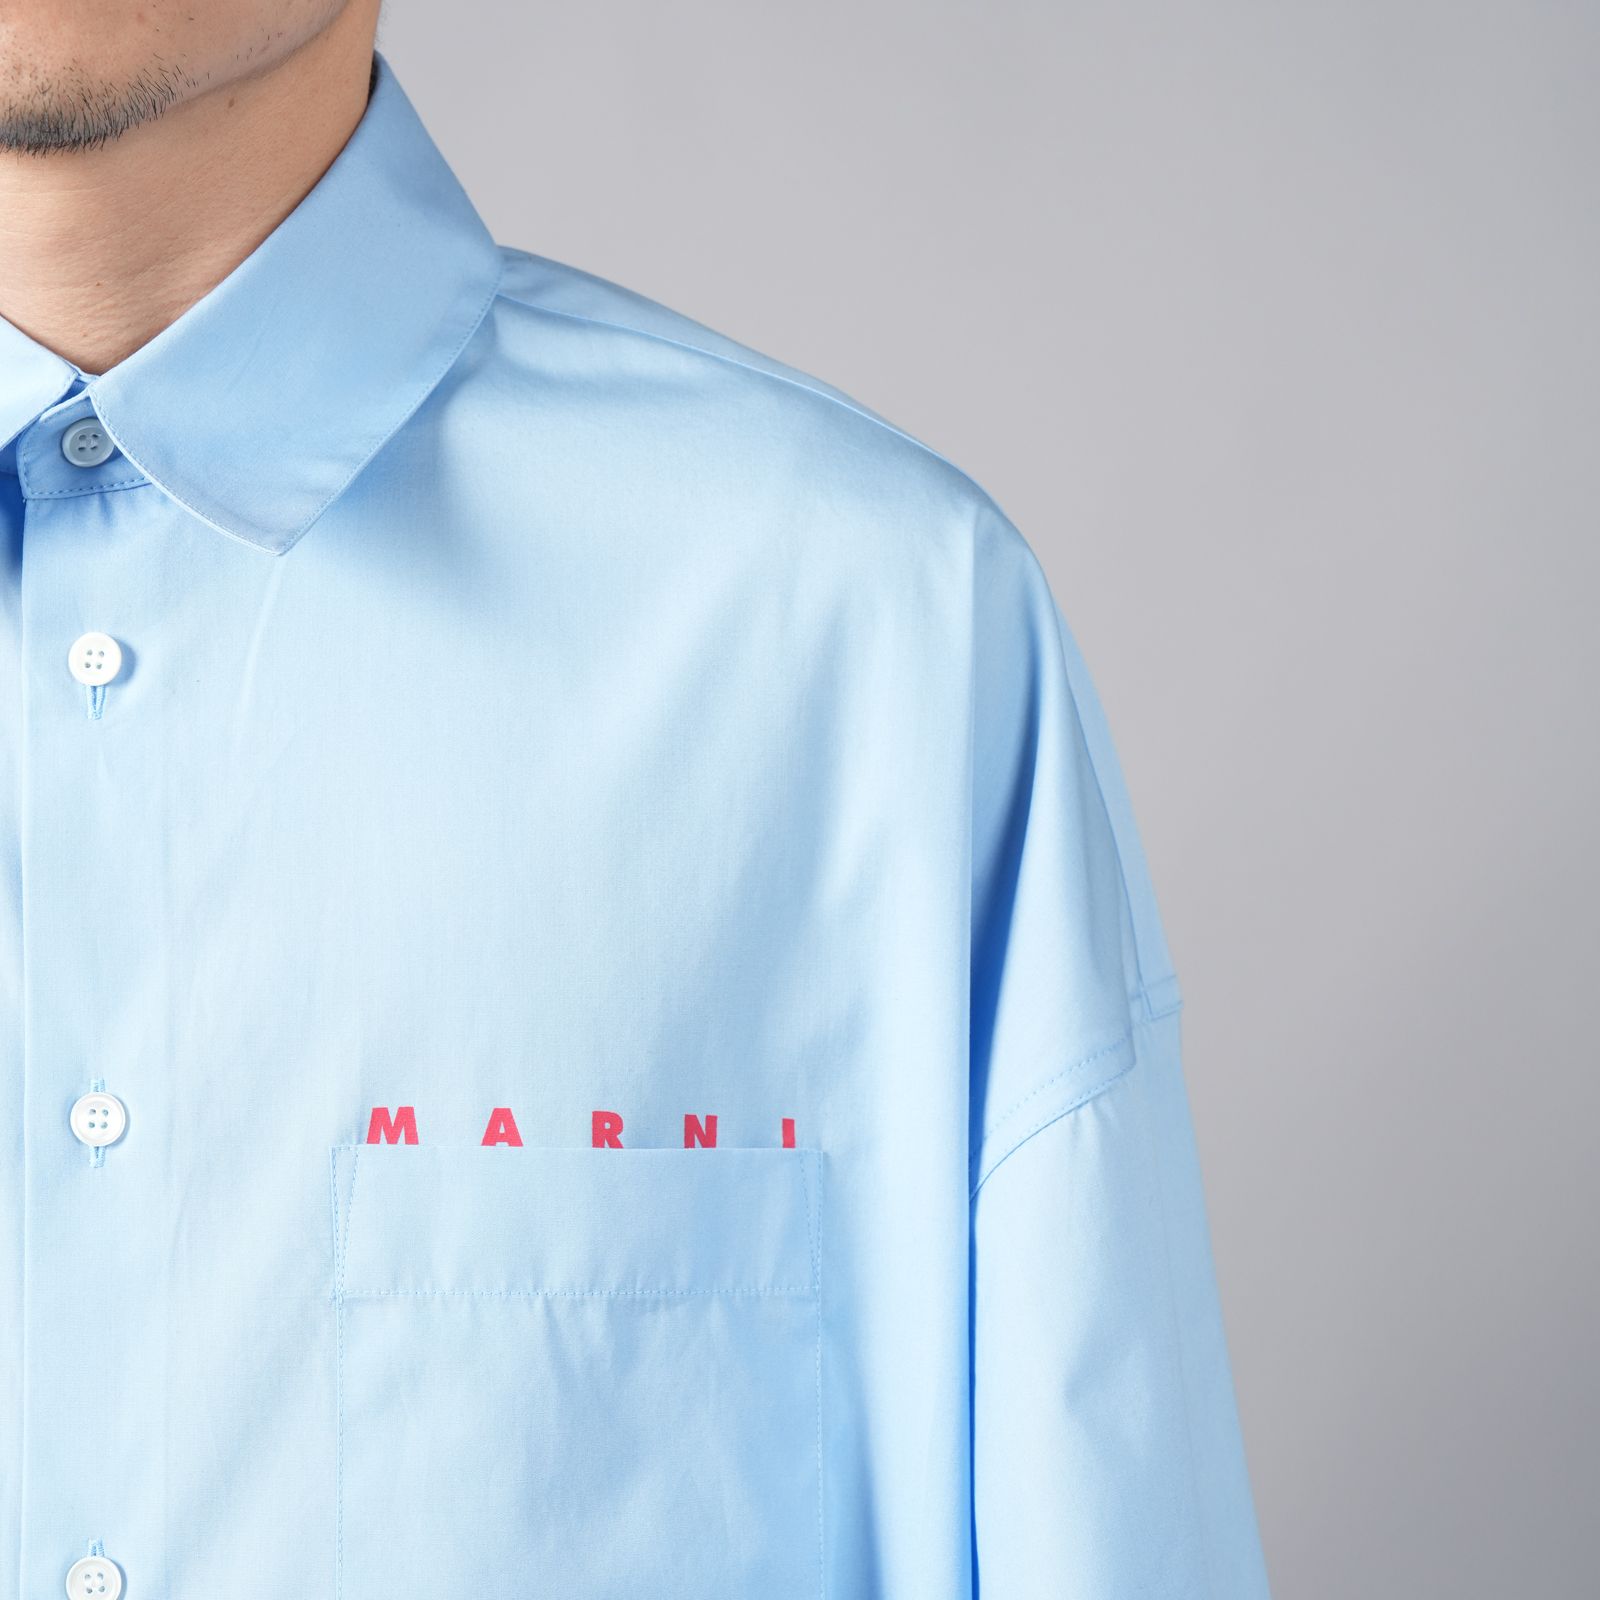 MARNI - L/S SHIRTS / ロングスリーブシャツ / 長袖シャツ (ブルー ...